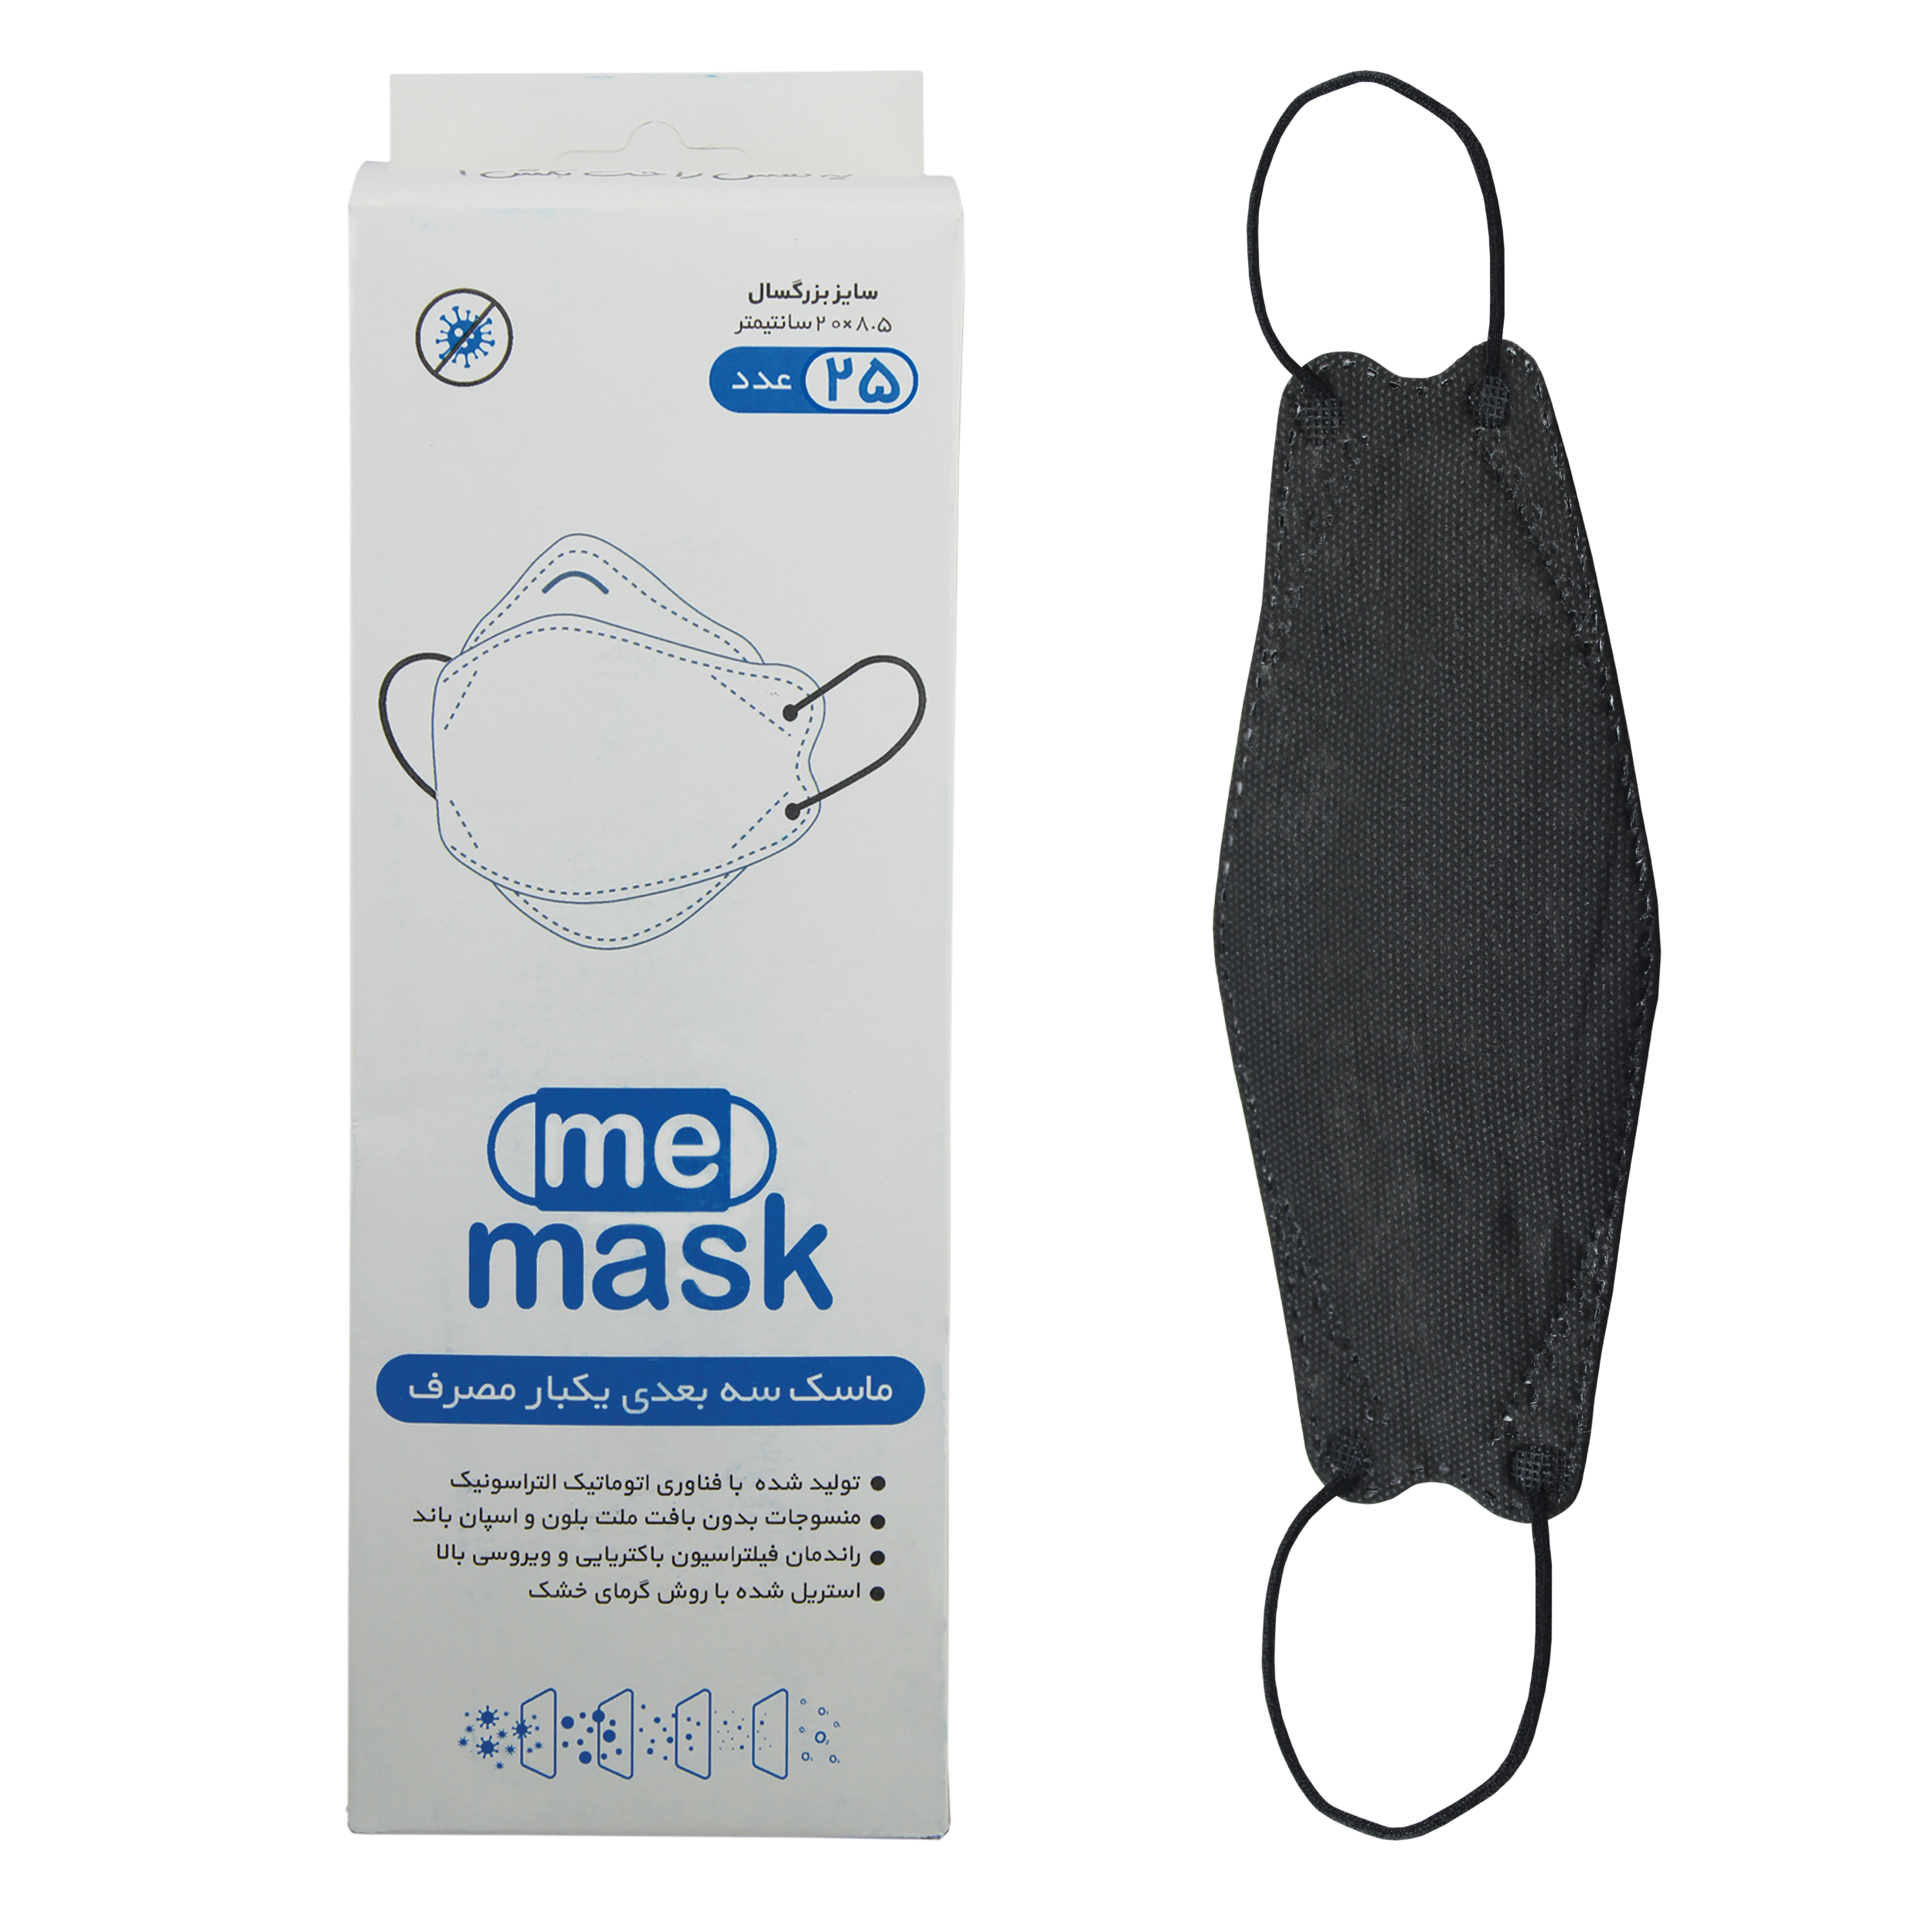 ماسک تنفسی می‌ماسک مدل سه بعدی Blk-25 بسته 25 عددی